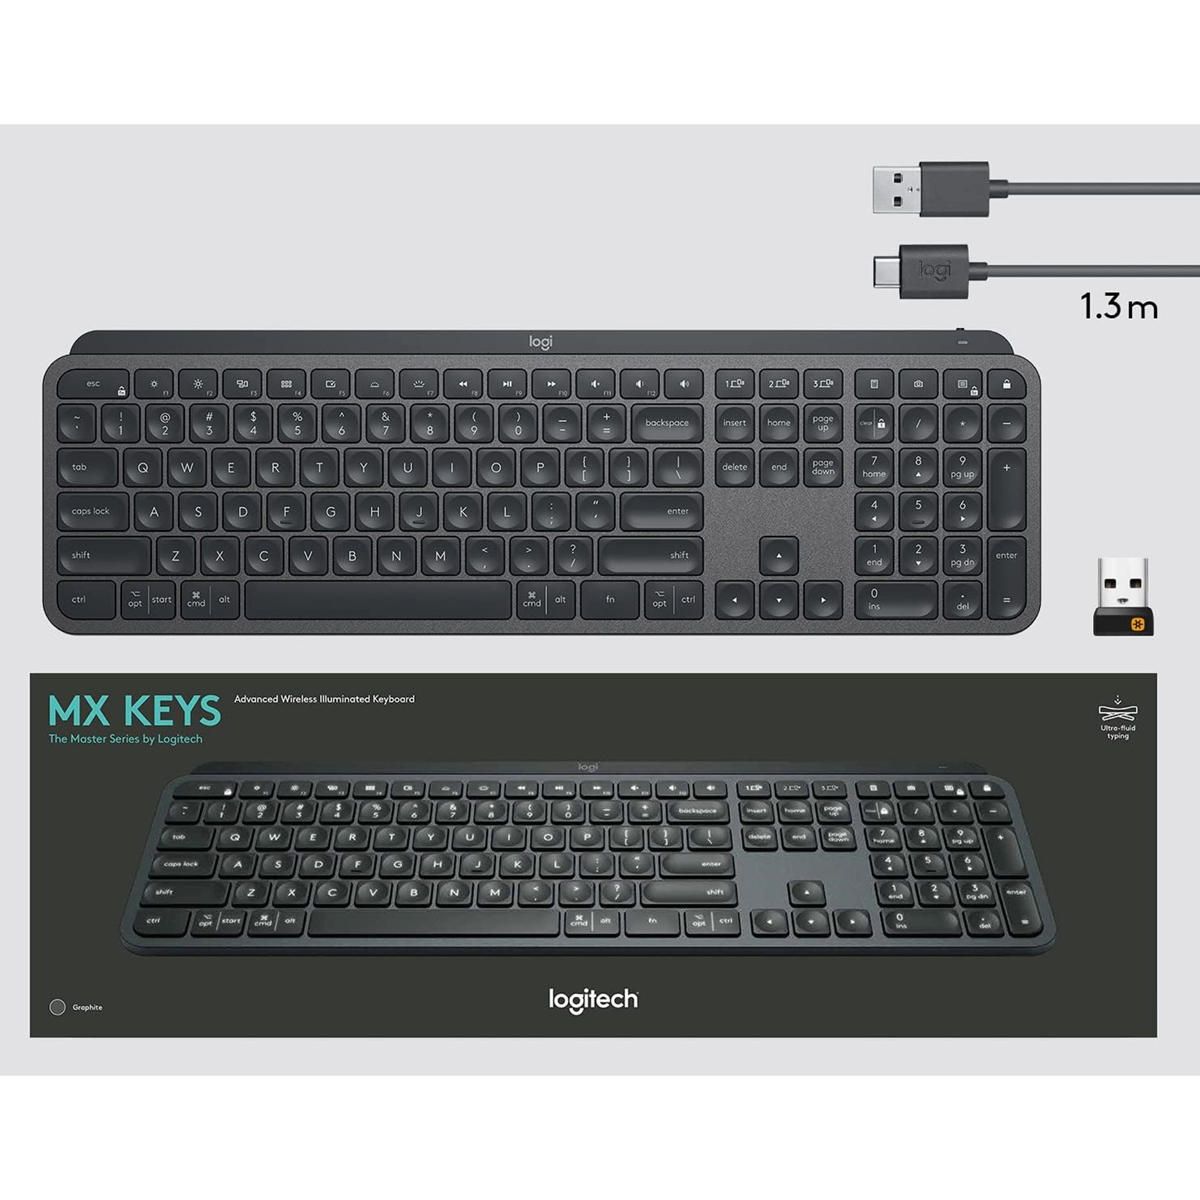 Logitech MX Keys Advanced Wireless Illuminated Keyboard, Arabic Layout, Graphite